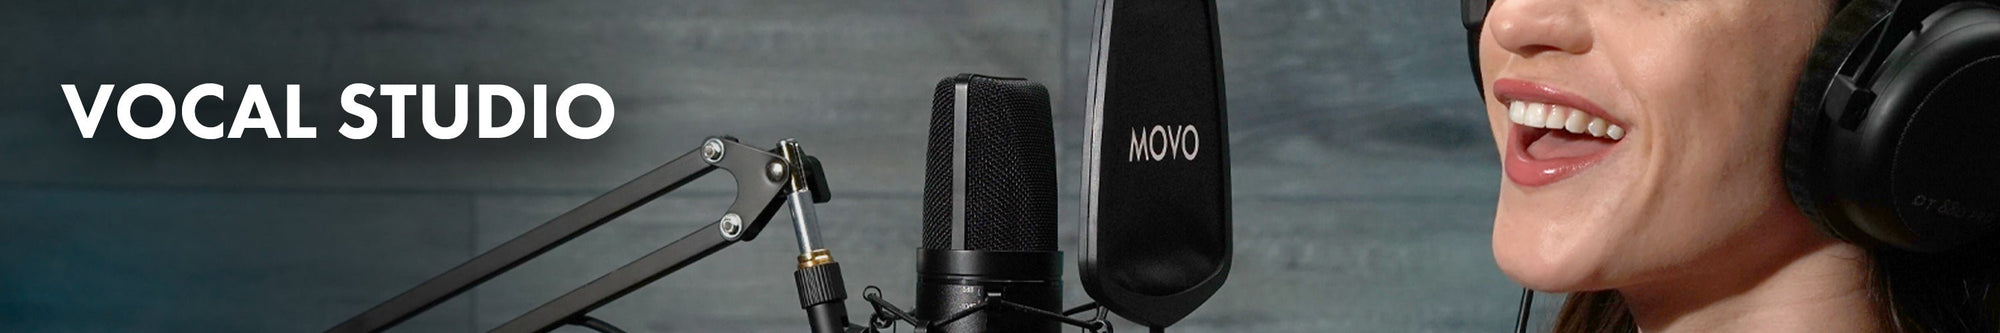 Vocal & Studio Microphones